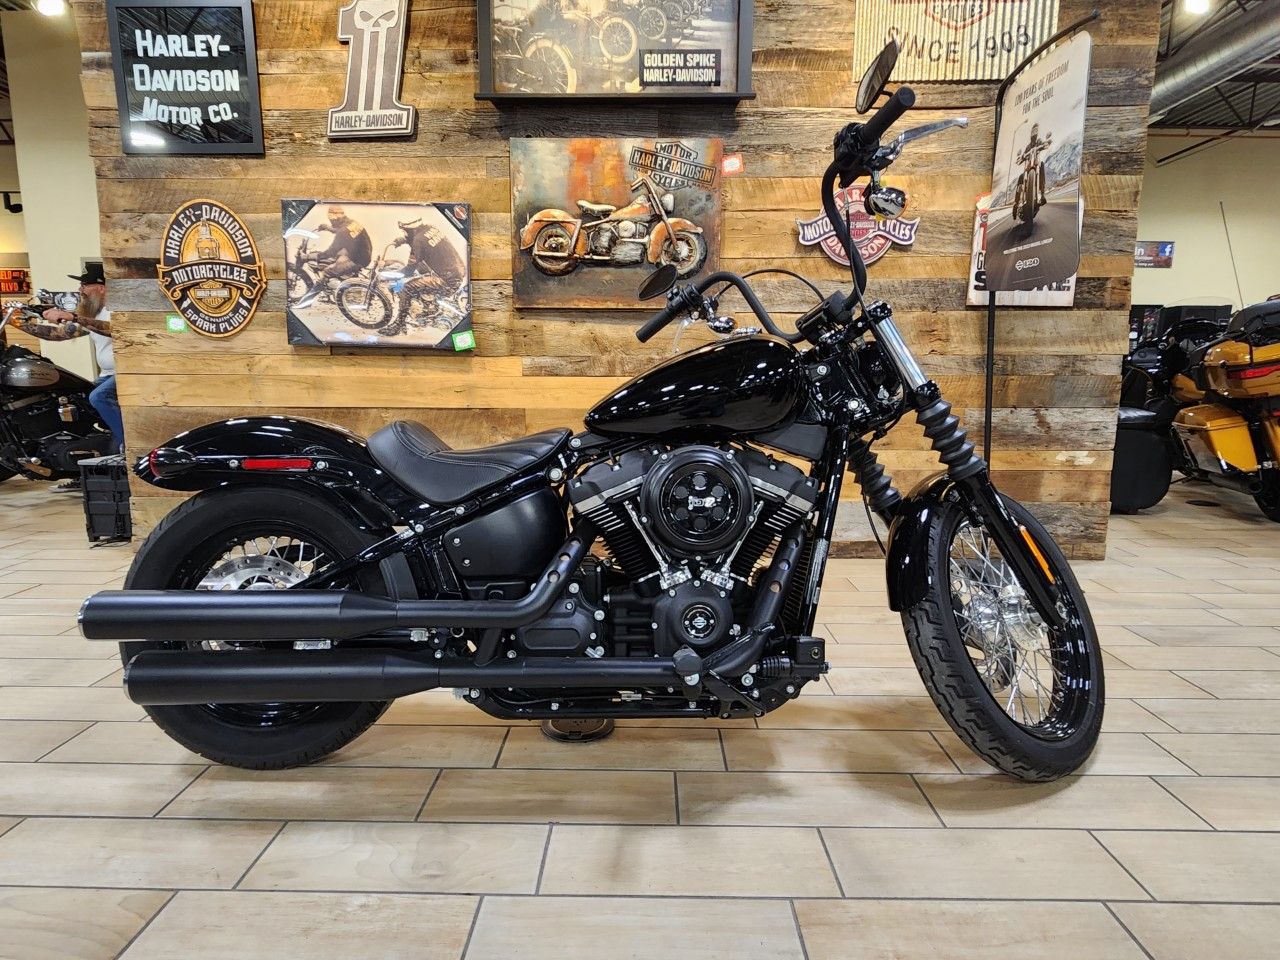 2019 Harley-Davidson Street Bob® in Riverdale, Utah - Photo 1